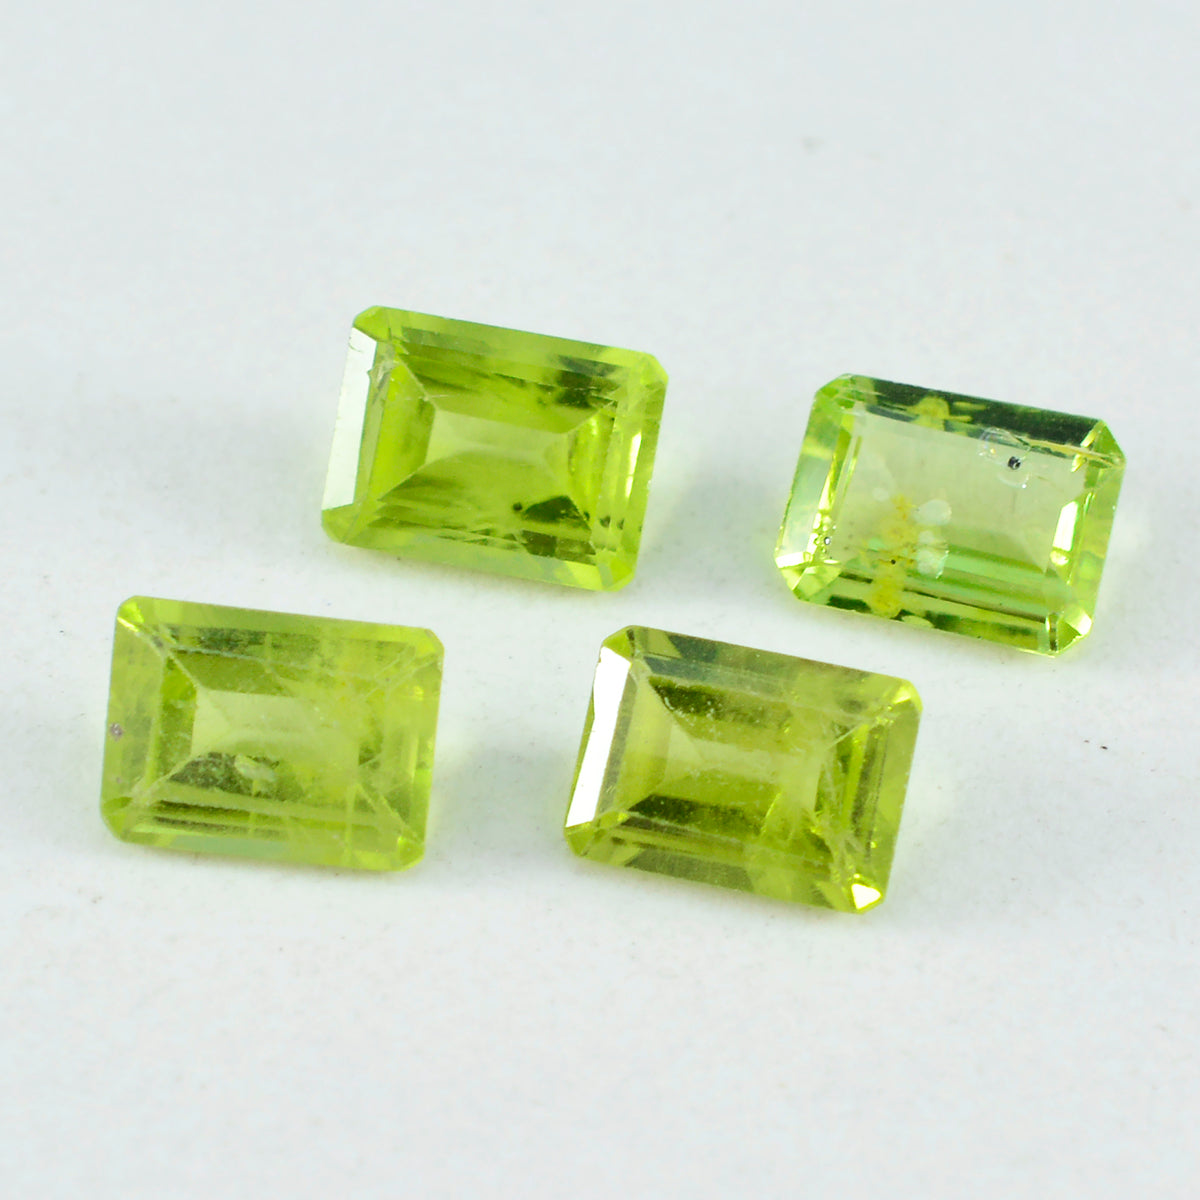 riyogems 1 st äkta grön peridot fasetterad 6x8 mm oktagon form häpnadsväckande kvalitet lösa ädelstenar